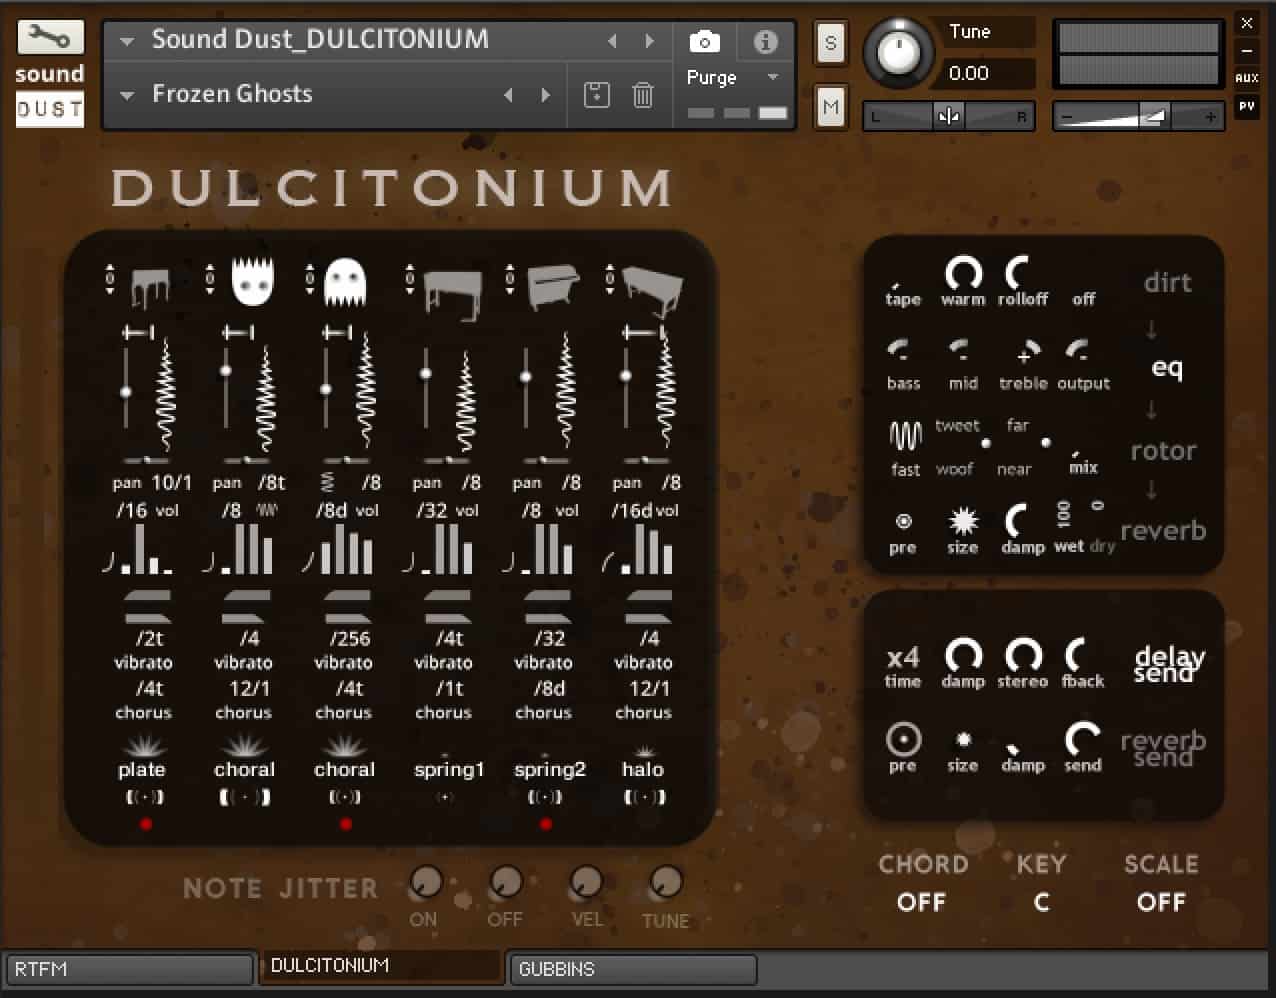 Sound Dust DULCITONIUM